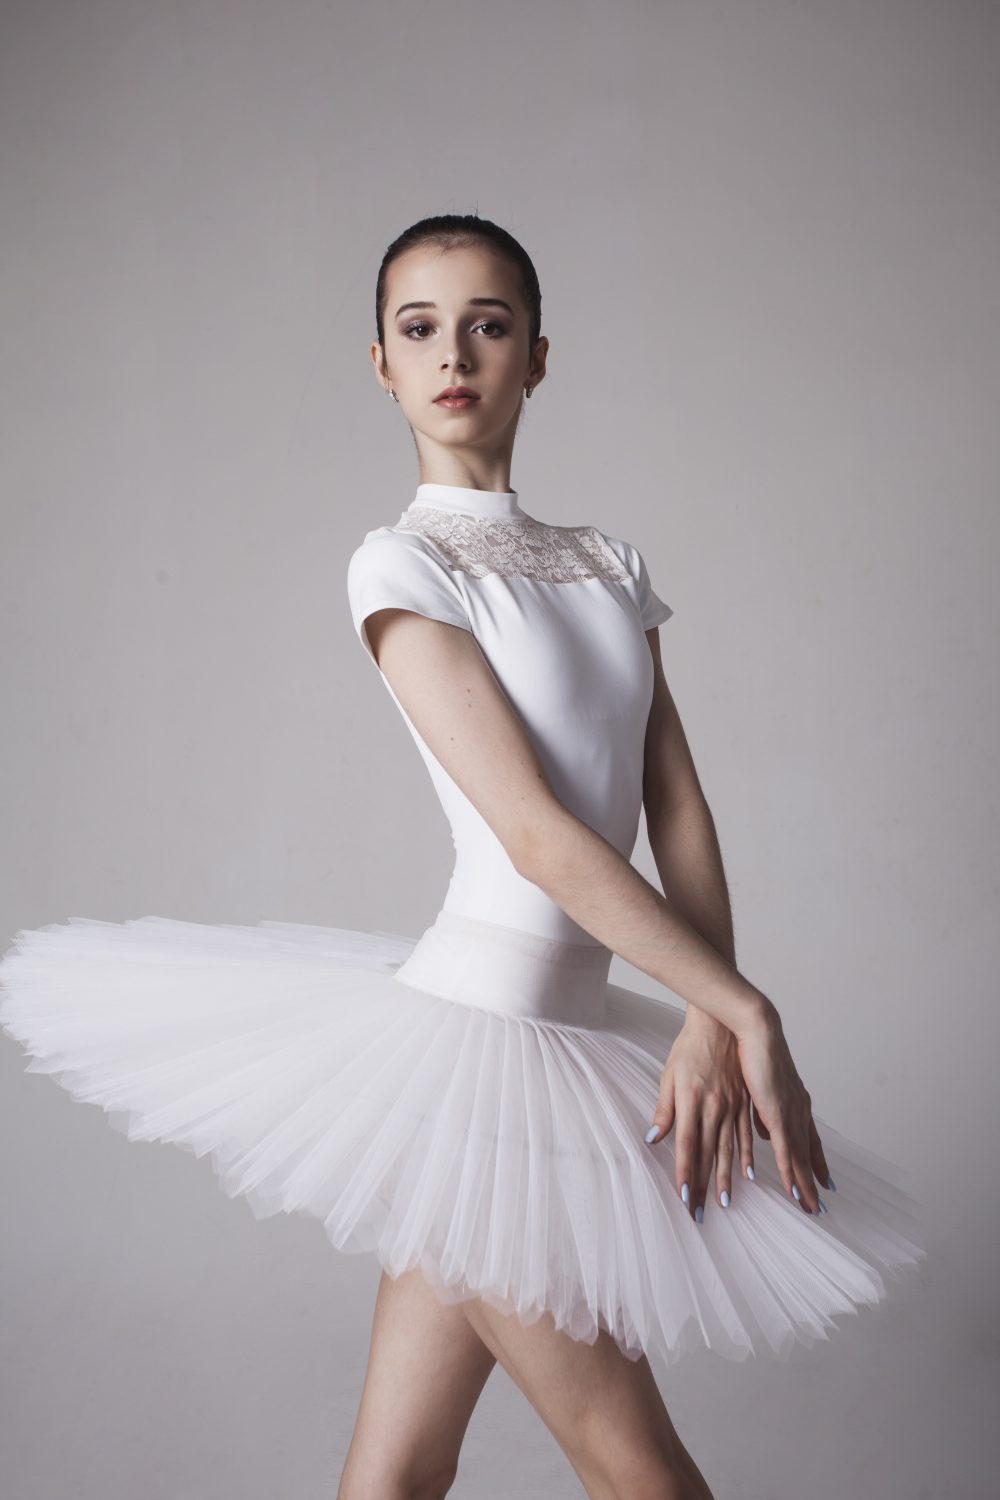 Rising Ballet Superstar Maria Khoreva 